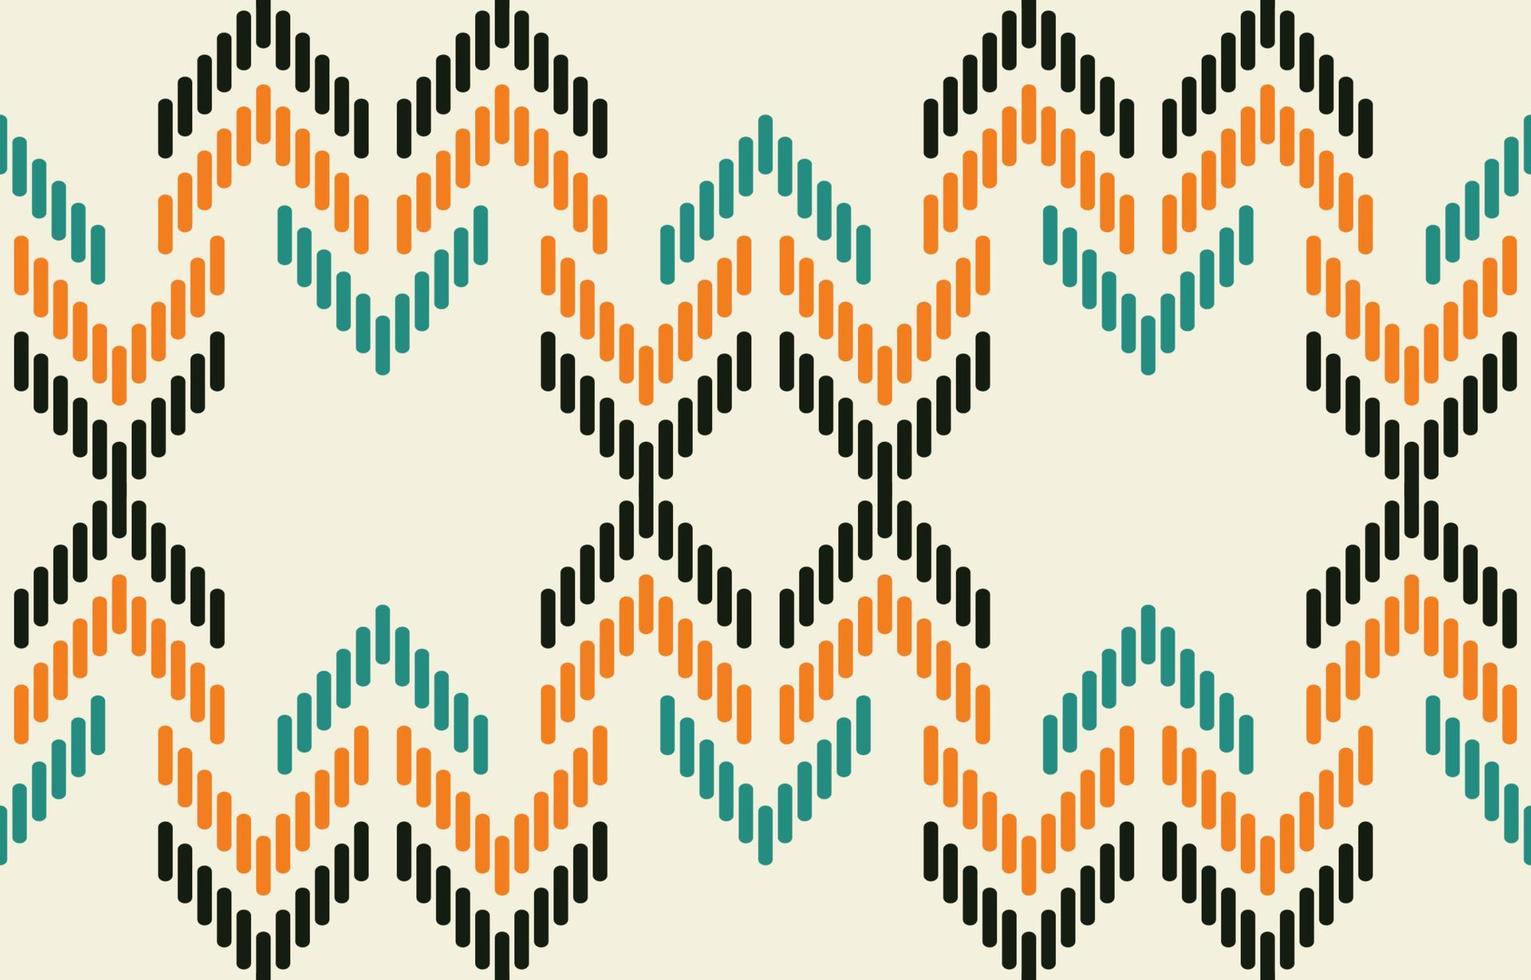 thnische Azteekse abstracte ikat-kunst. naadloze motief driehoek chevron patroon in tribale, navajo folk borduurwerk en mexicaanse stijl. geometrische kunst ornament print.design voor tapijt, behang, textiel. vector